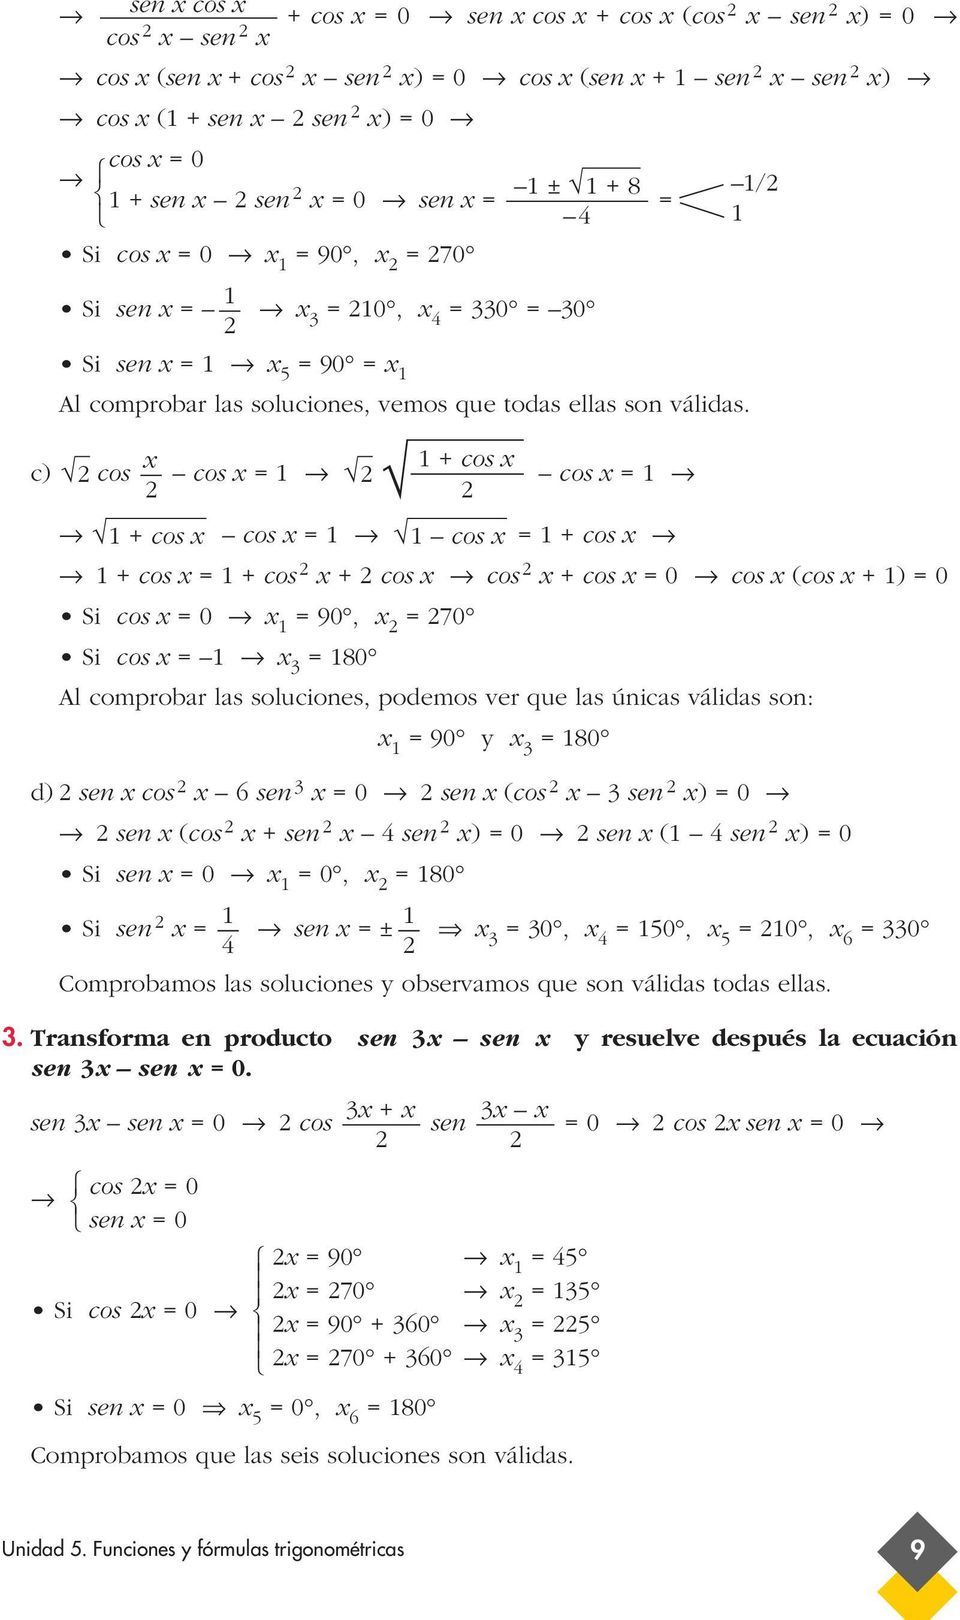 x + cos x c) cos cos x cos x + cos x cos x cos x + cos x + cos x + cos x + cos x cos x + cos x 0 cos x (cos x + ) 0 Si cos x 0 x 90, x 70 Si cos x x 80 Al comprobar las soluciones, podemos ver que